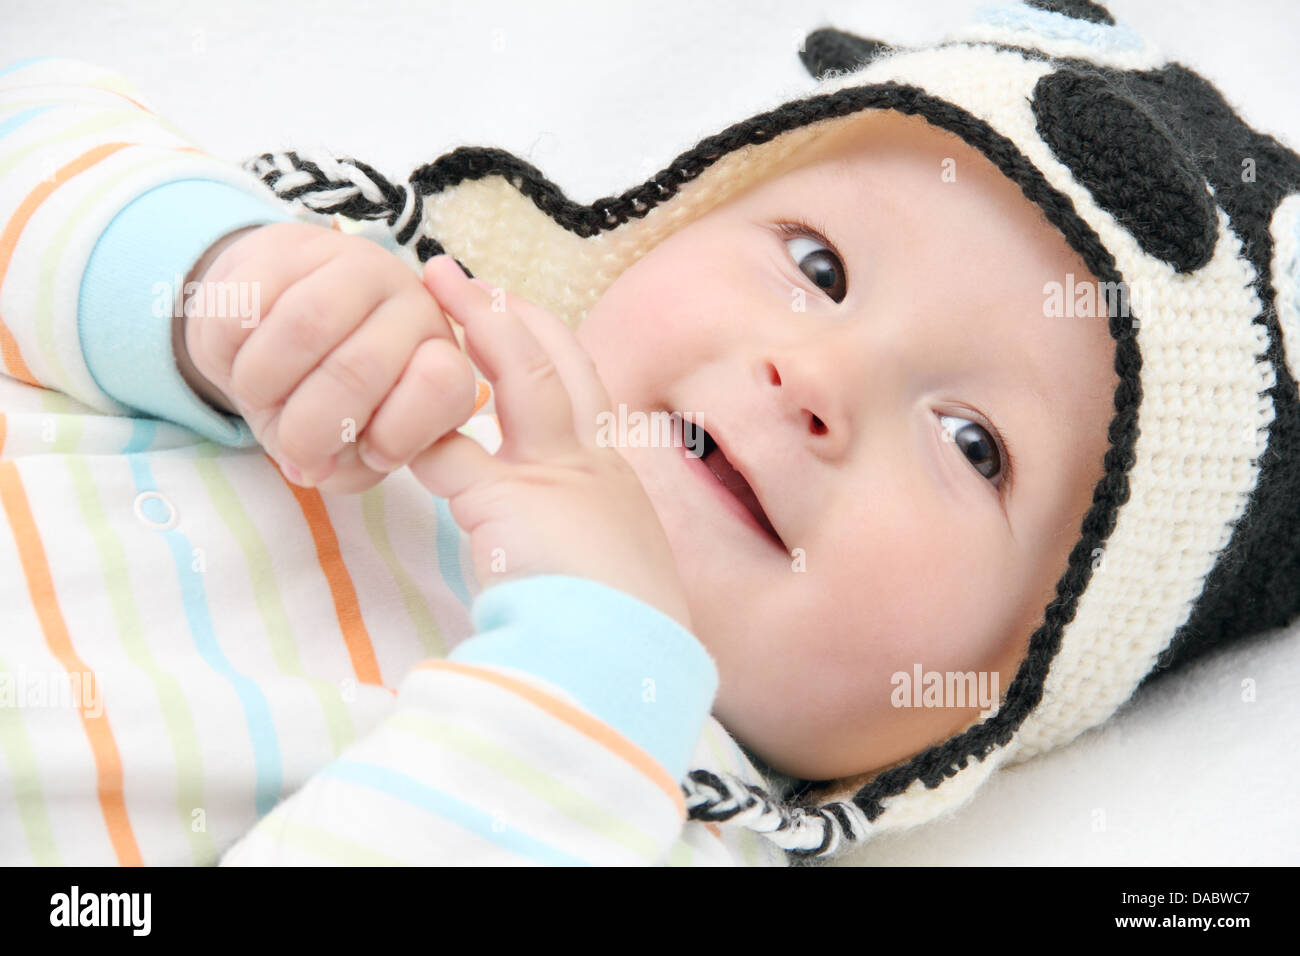 Smiling baby se situe sur le dos sur un lit blanc Banque D'Images